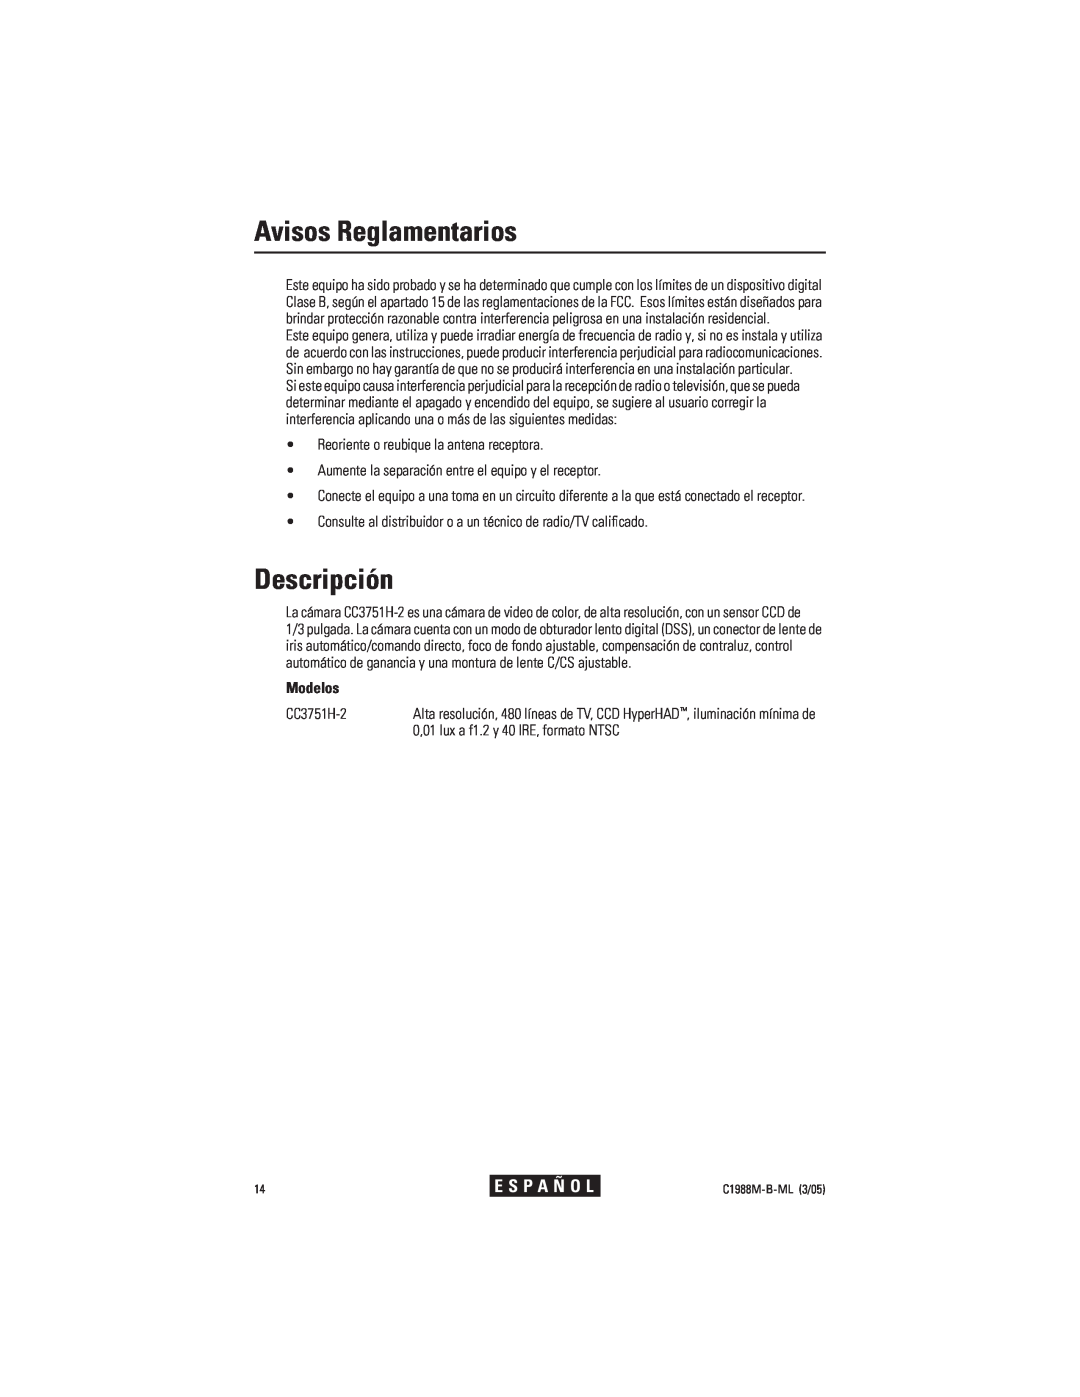 Pelco CC3751H-2 manual Avisos Reglamentarios, Descripción, Modelos, E S P A Ñ O L 